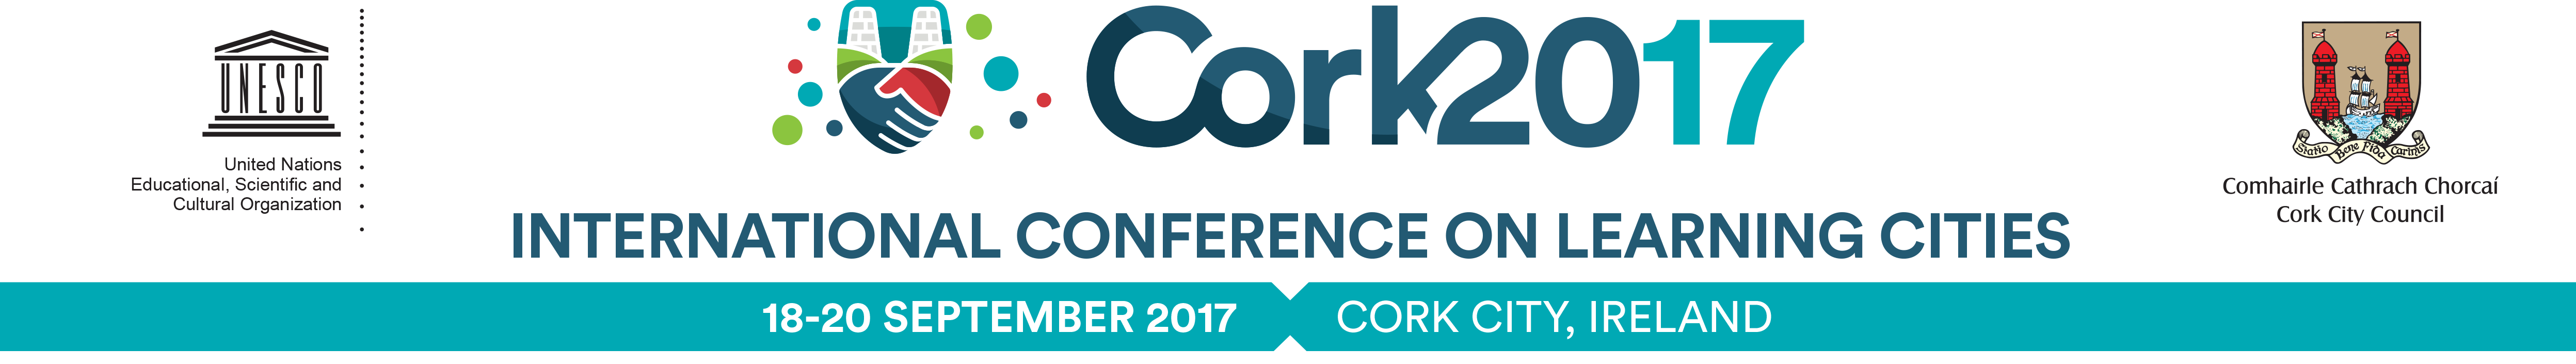 Cork 2017 Banner 2